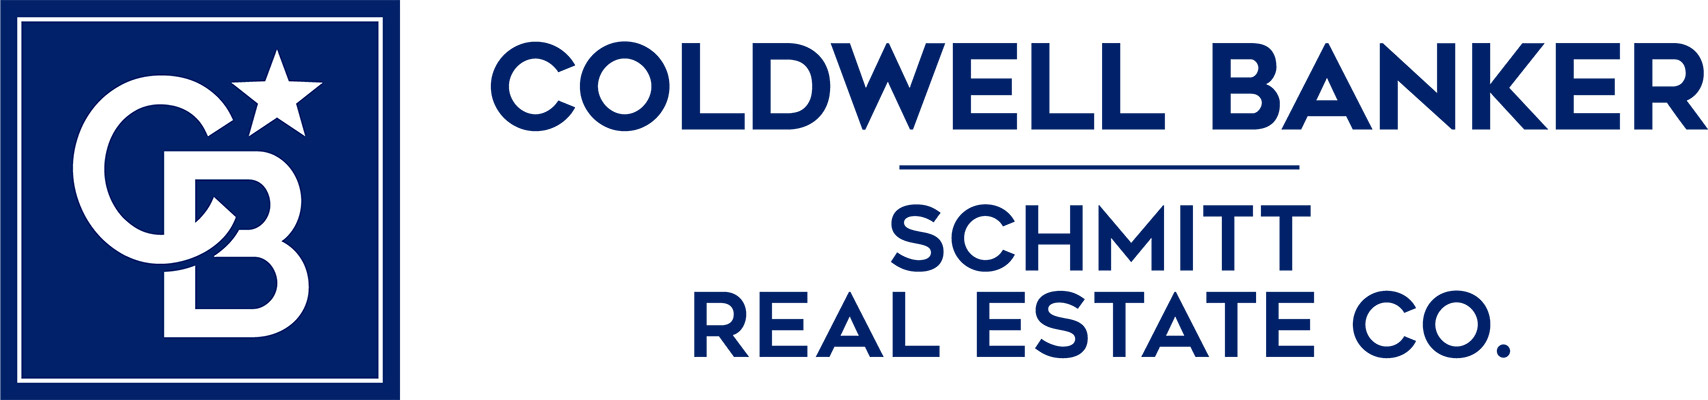 Brian C. Schmitt - Coldwell Banker Logo